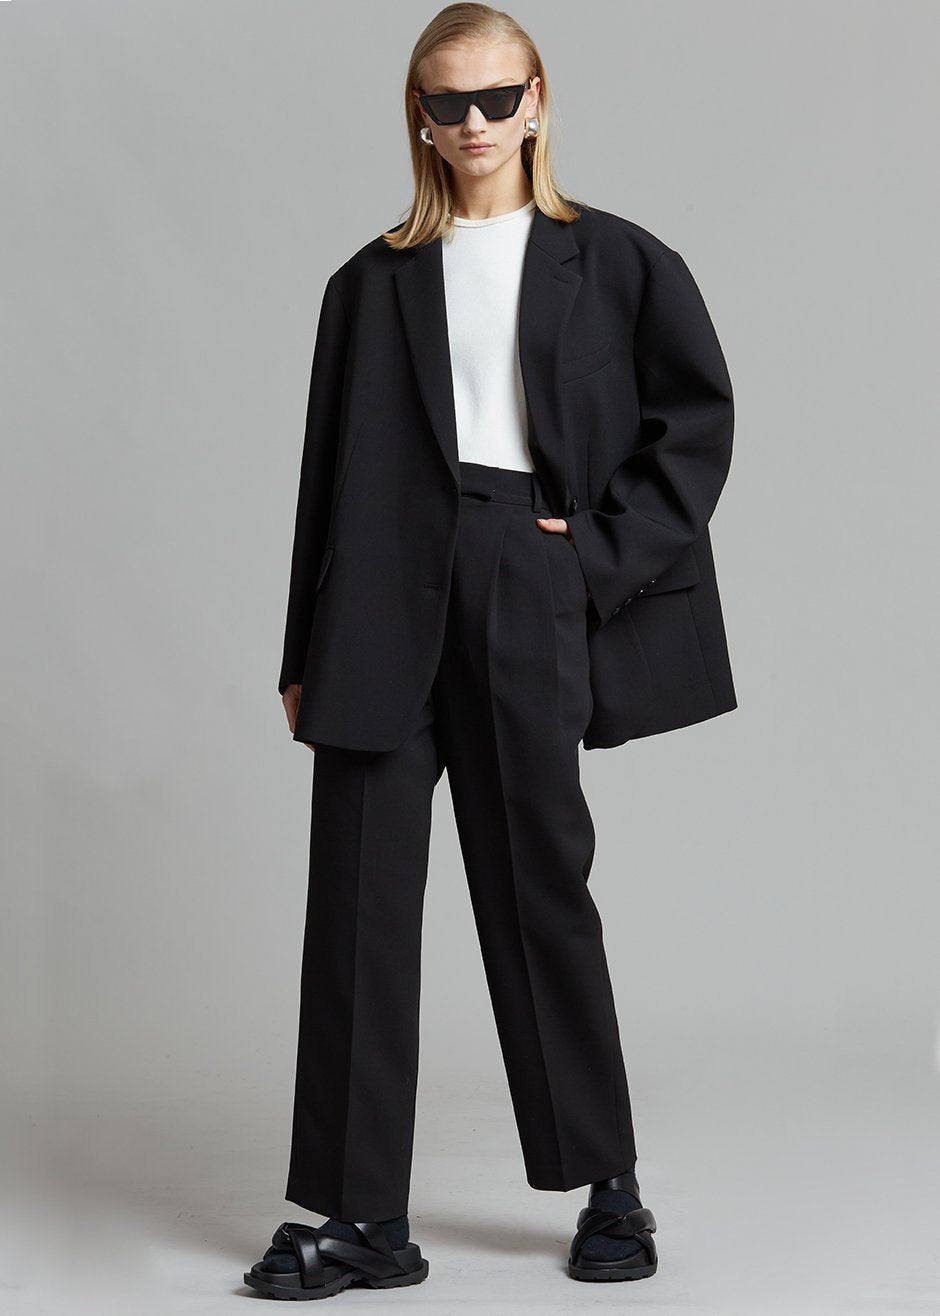 Calvin Klein Slim Fit Solid Wool Blend Suit Separates Pants | Nordstromrack